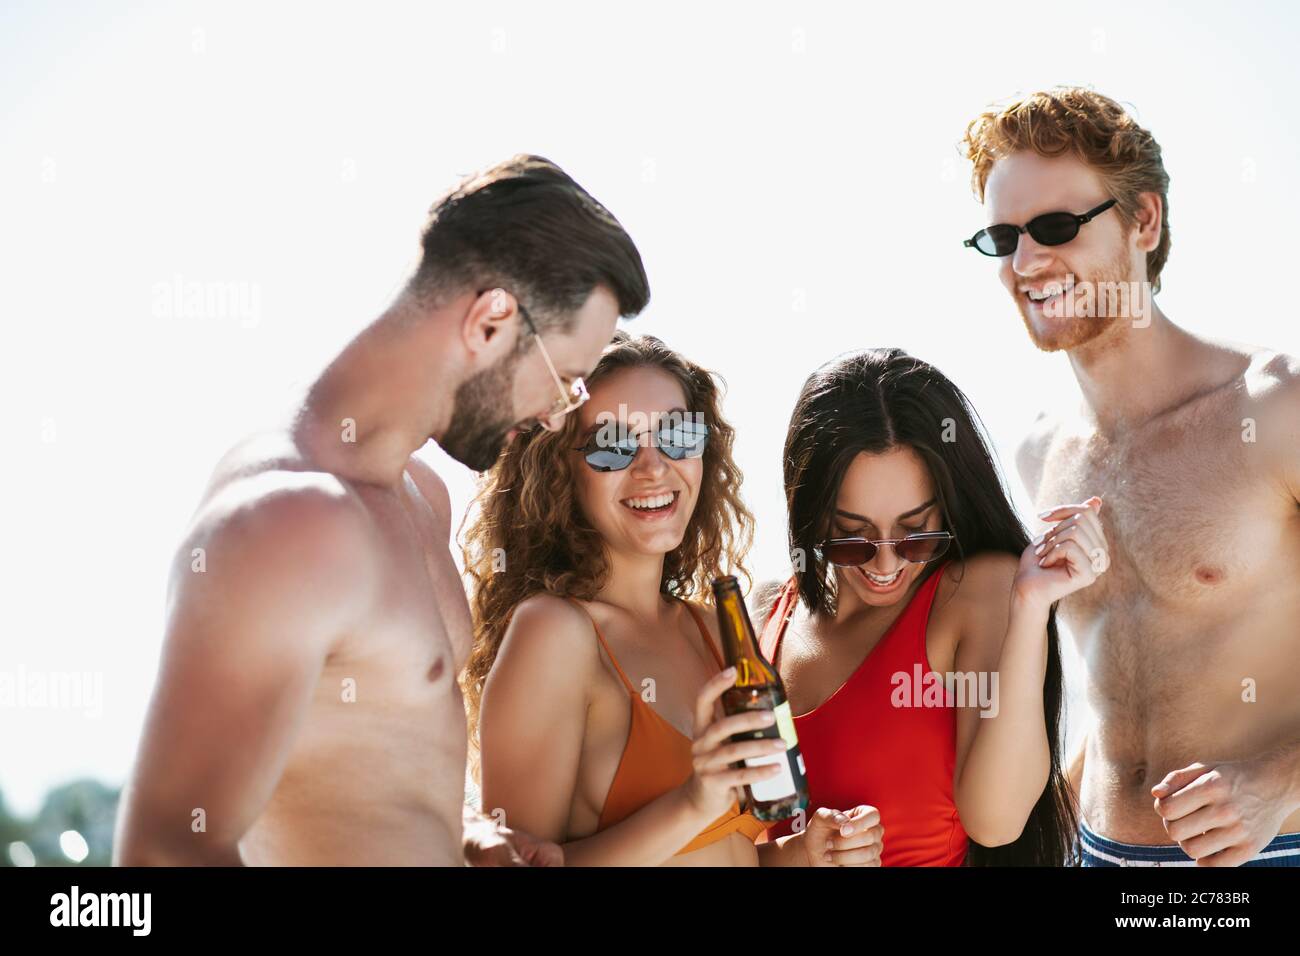 Junge Leute in Badeanzügen haben gute Zeit Bier trinken, kokett fühlen Stockfoto